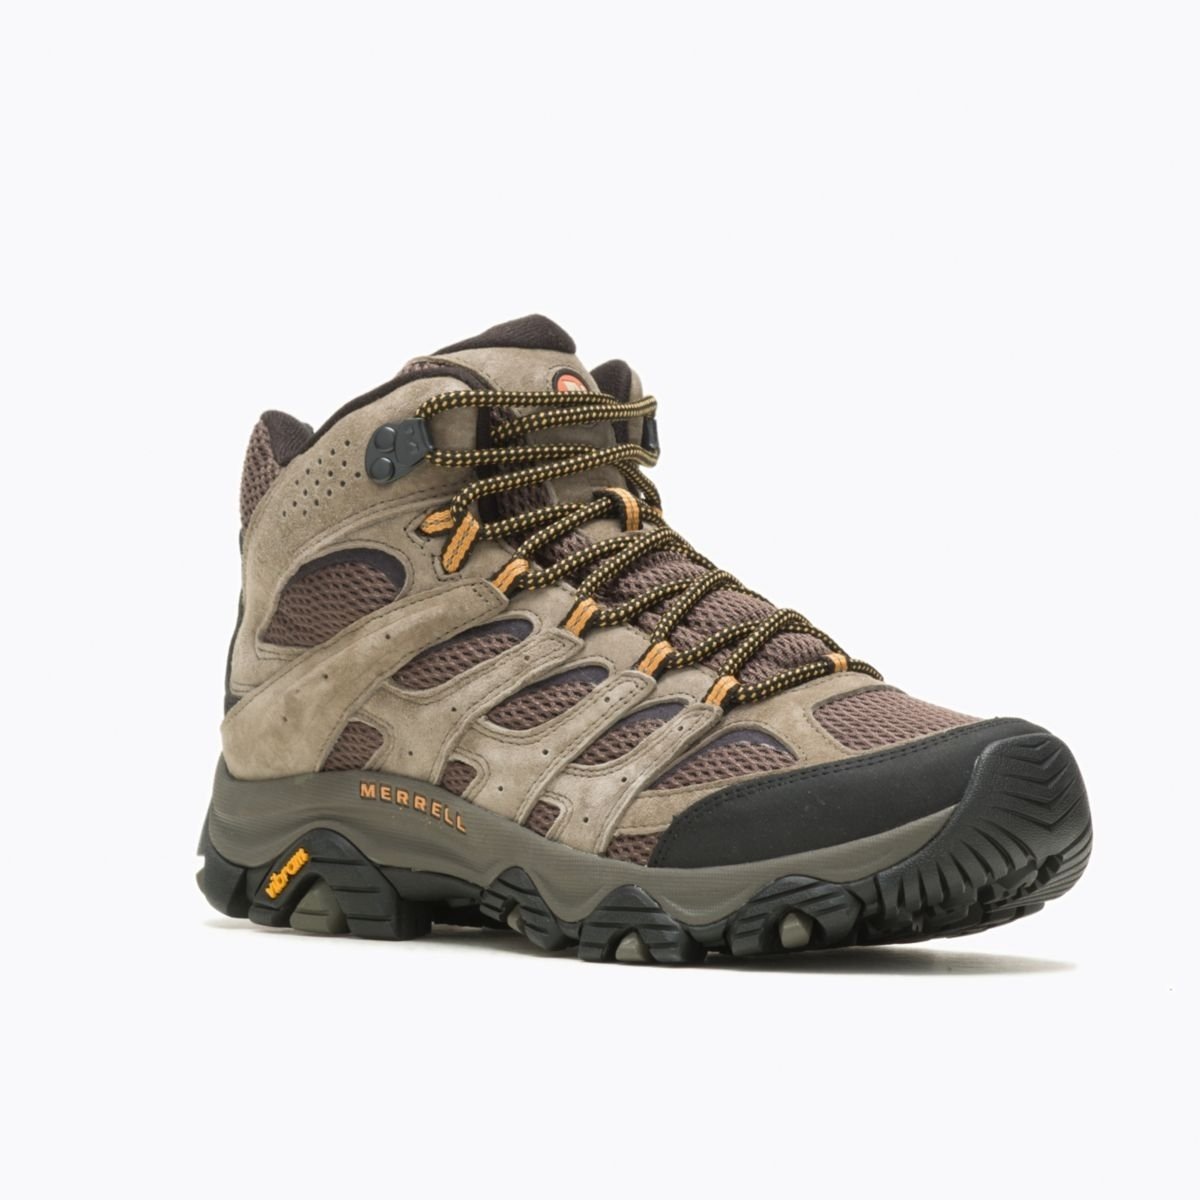 Merrell Men's Moab 3 Mid GORE-TEX Hiking Boot Walnut - J035795 WALNUT - WALNUT, 8